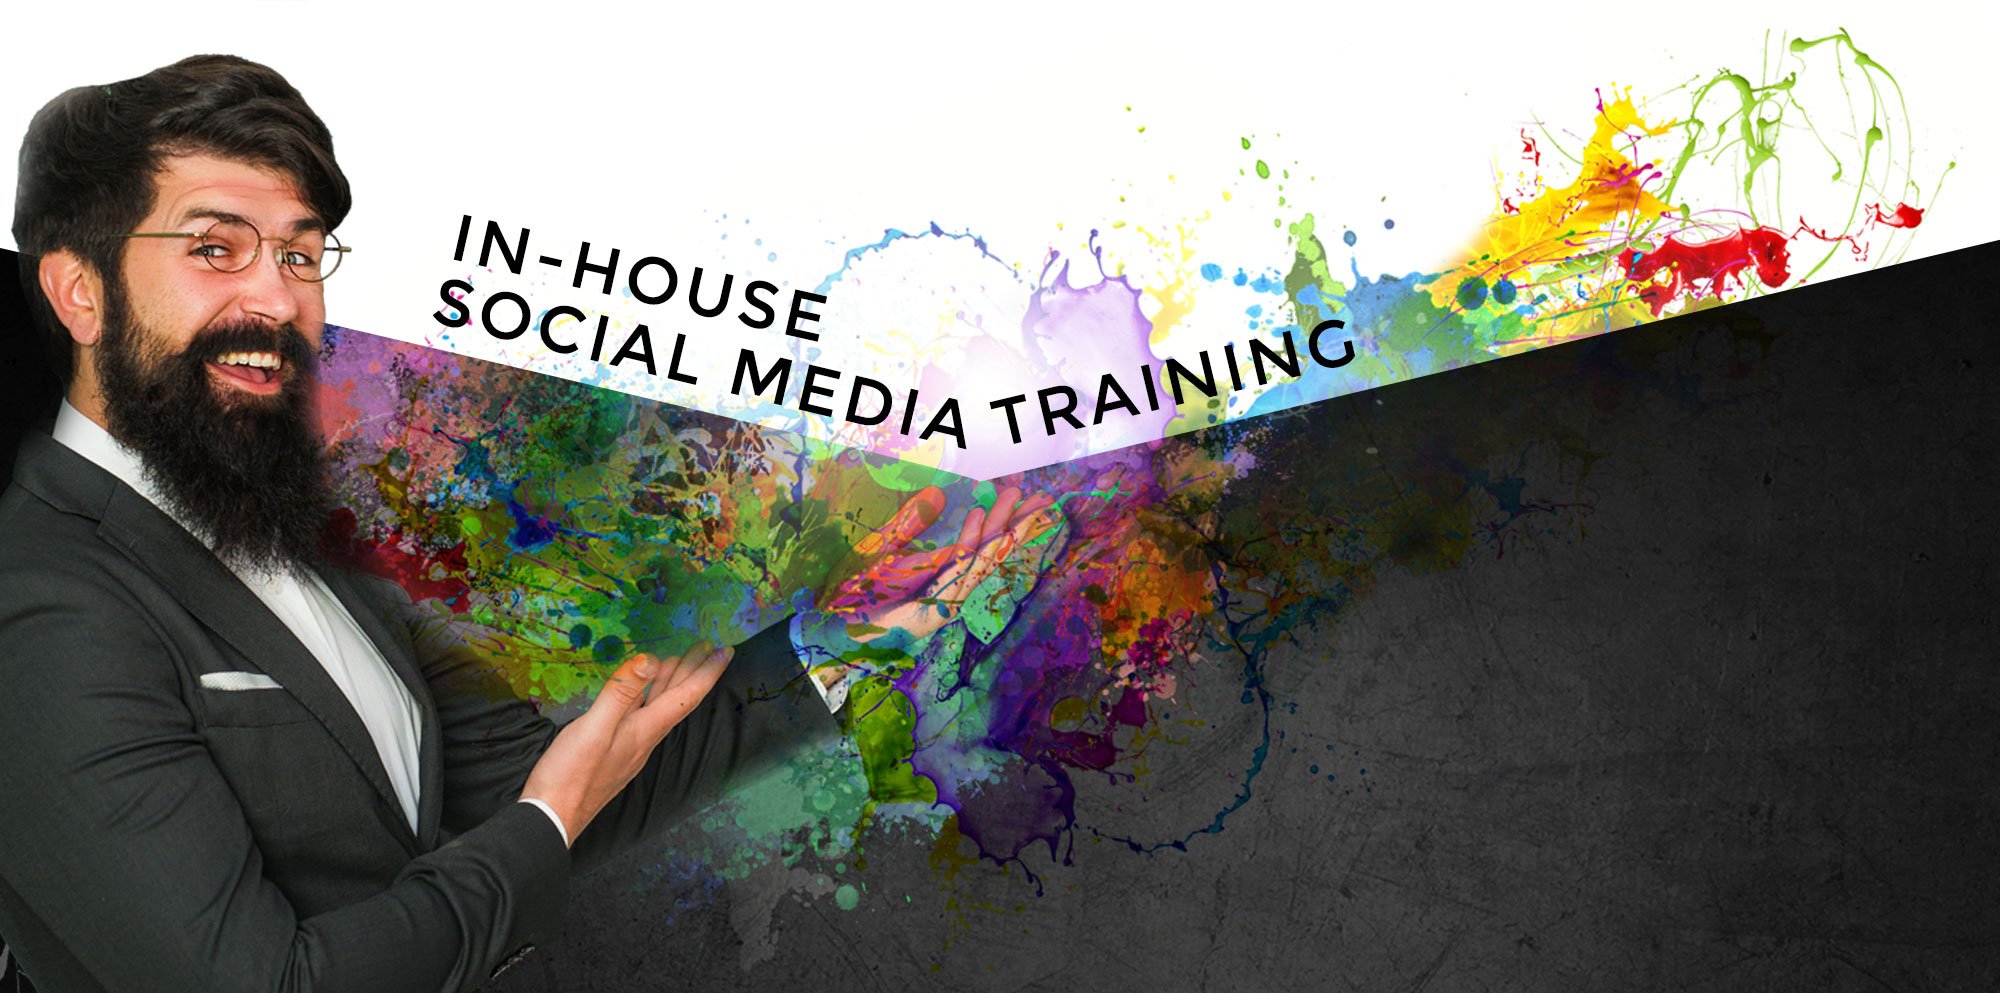 Training SMheader - IN-HOUSE SOCIAL MEDIA TRAINING